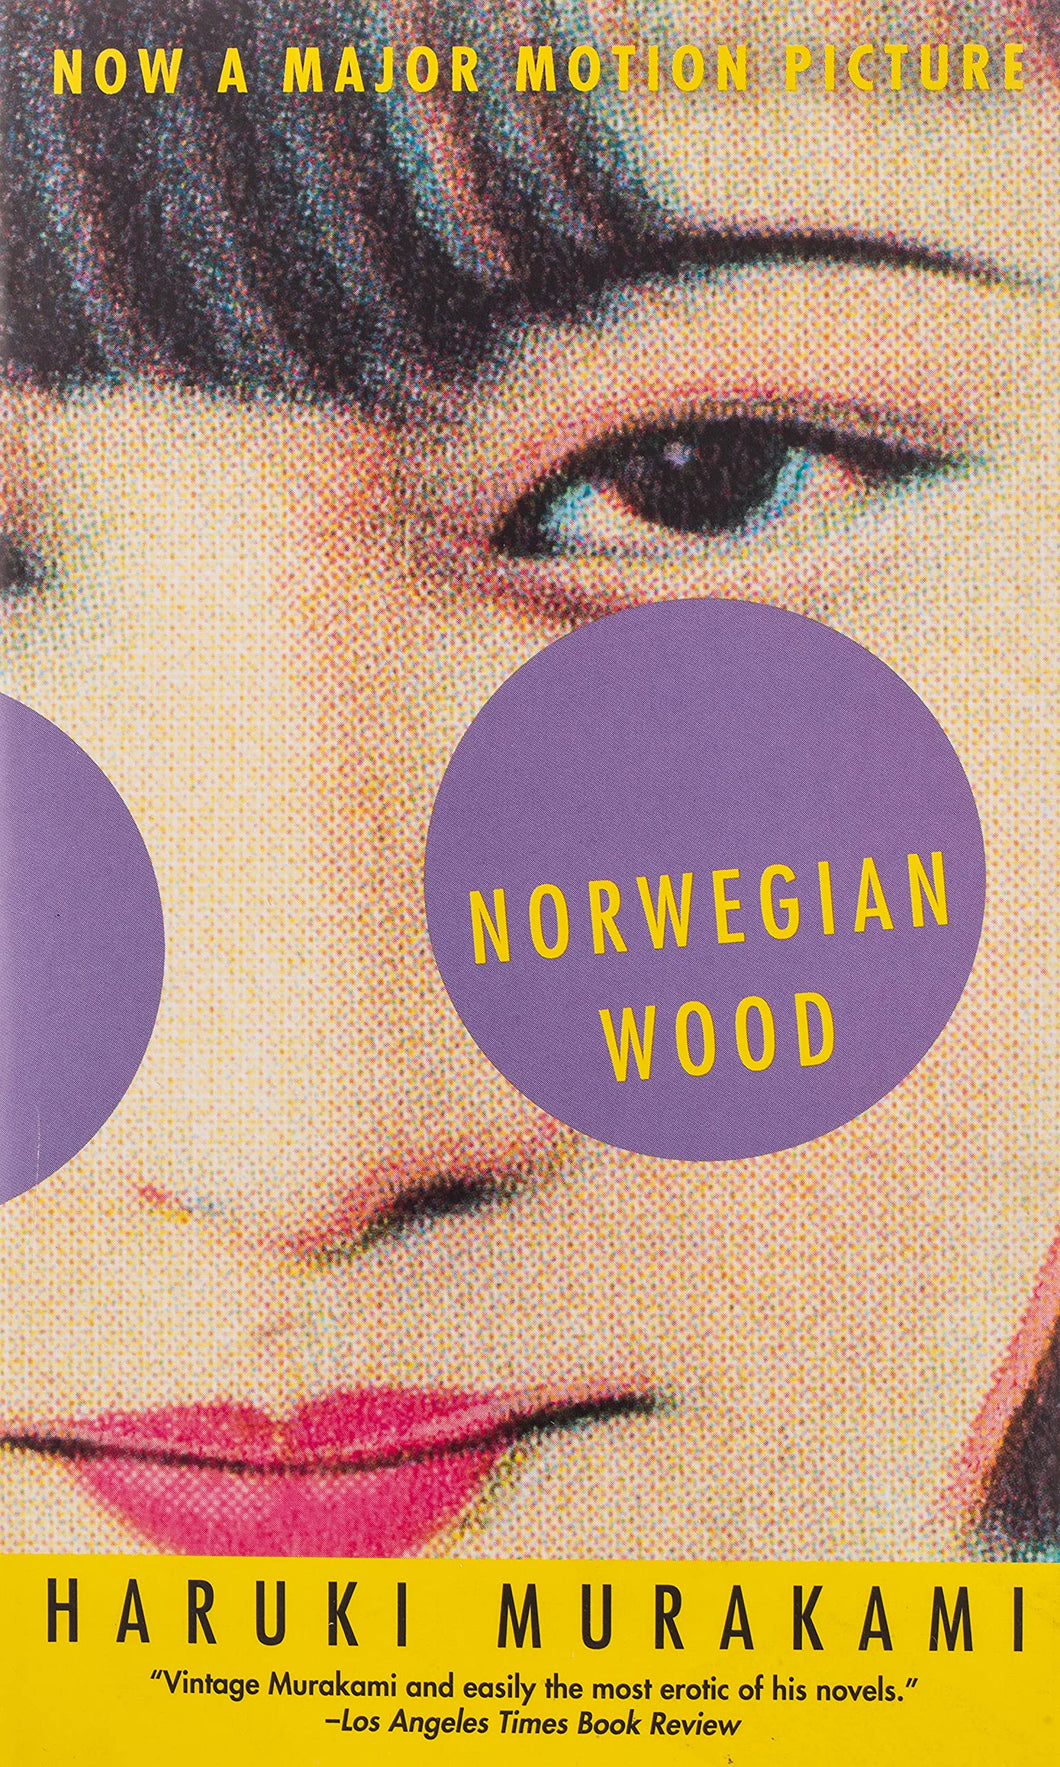 Norwegian Wood ร้านหนังสือและสิ่งของ เป็นร้านหนังสือภาษาอังกฤษหายาก และร้านกาแฟ หรือ บุ๊คคาเฟ่ ตั้งอยู่สุขุมวิท กรุงเทพ